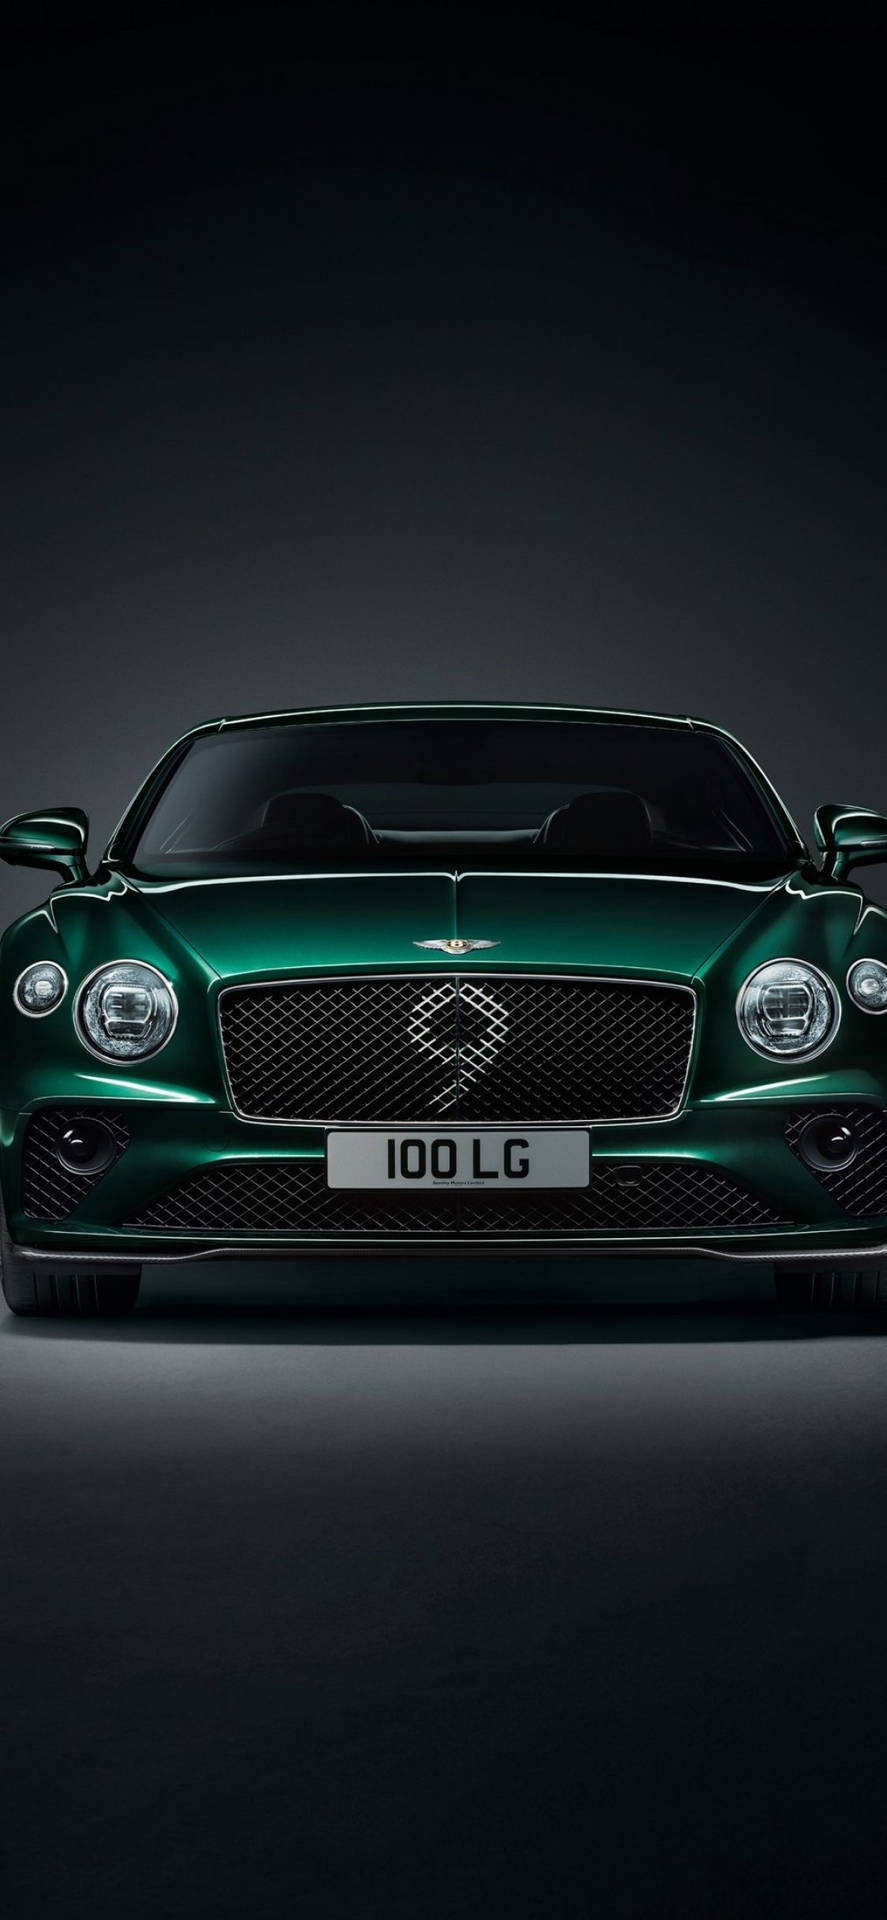 Sort grøn Bentley bil iPhone tapet Wallpaper